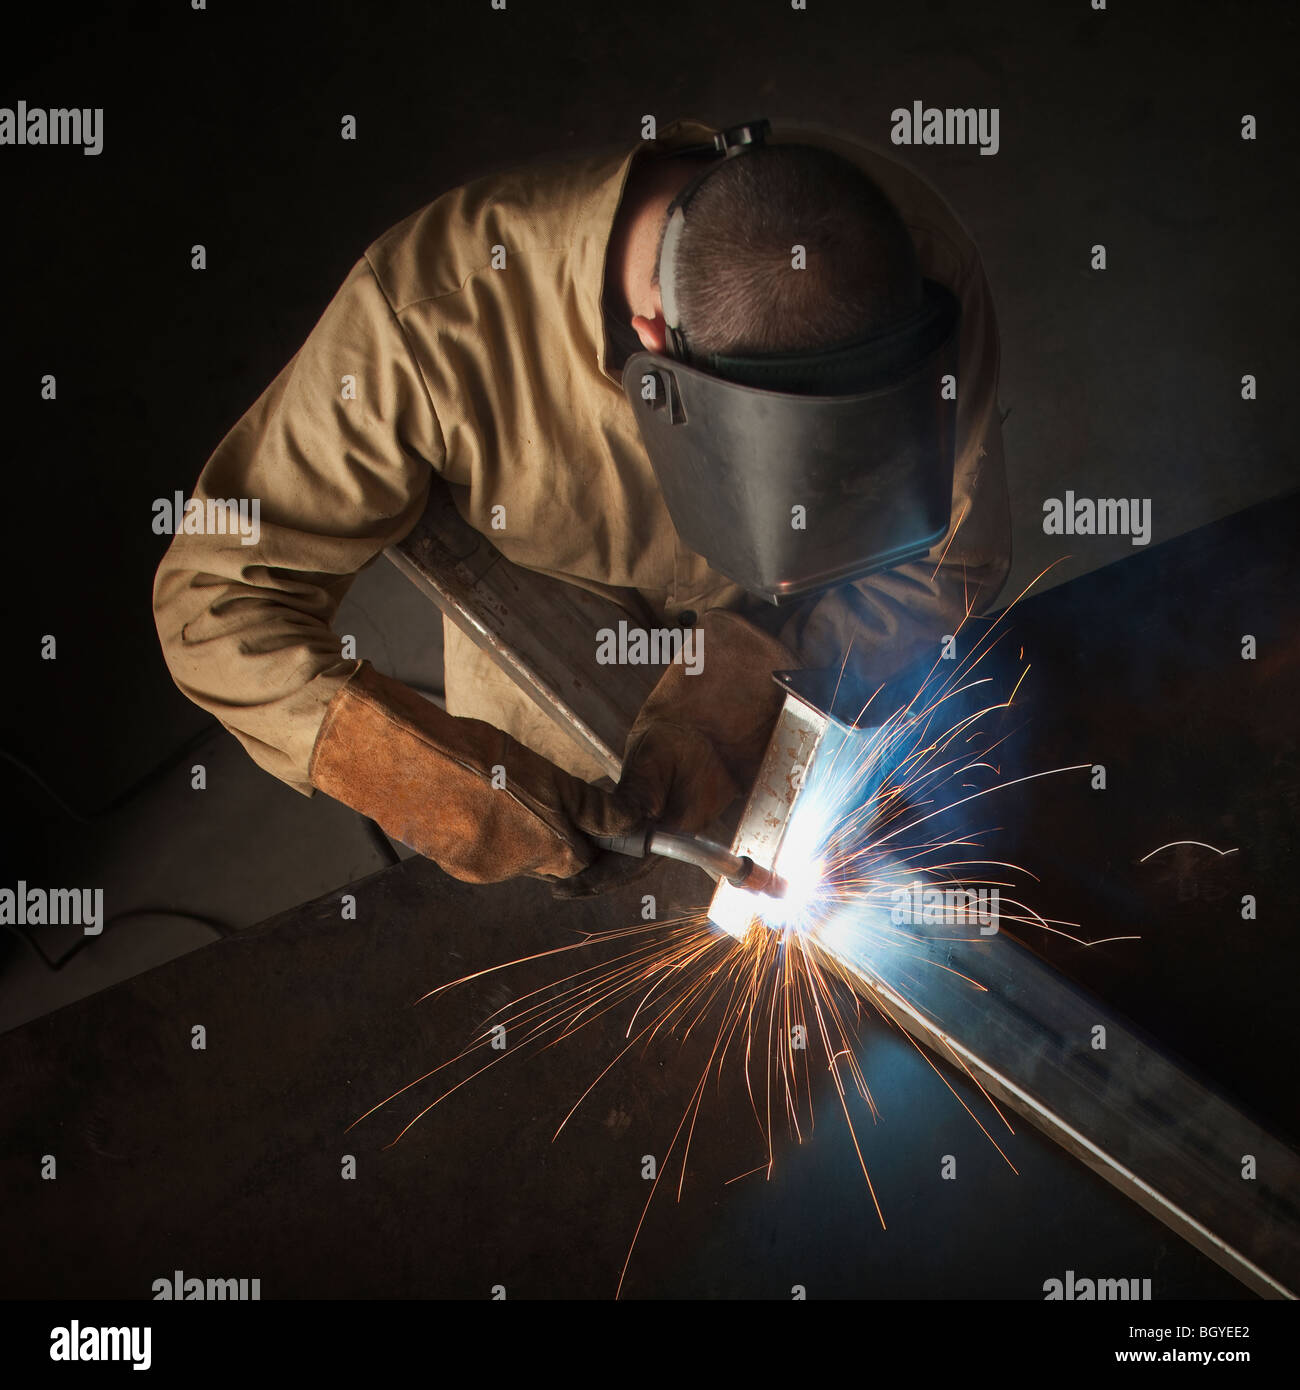 Steel worker in metal shop Stock Photo